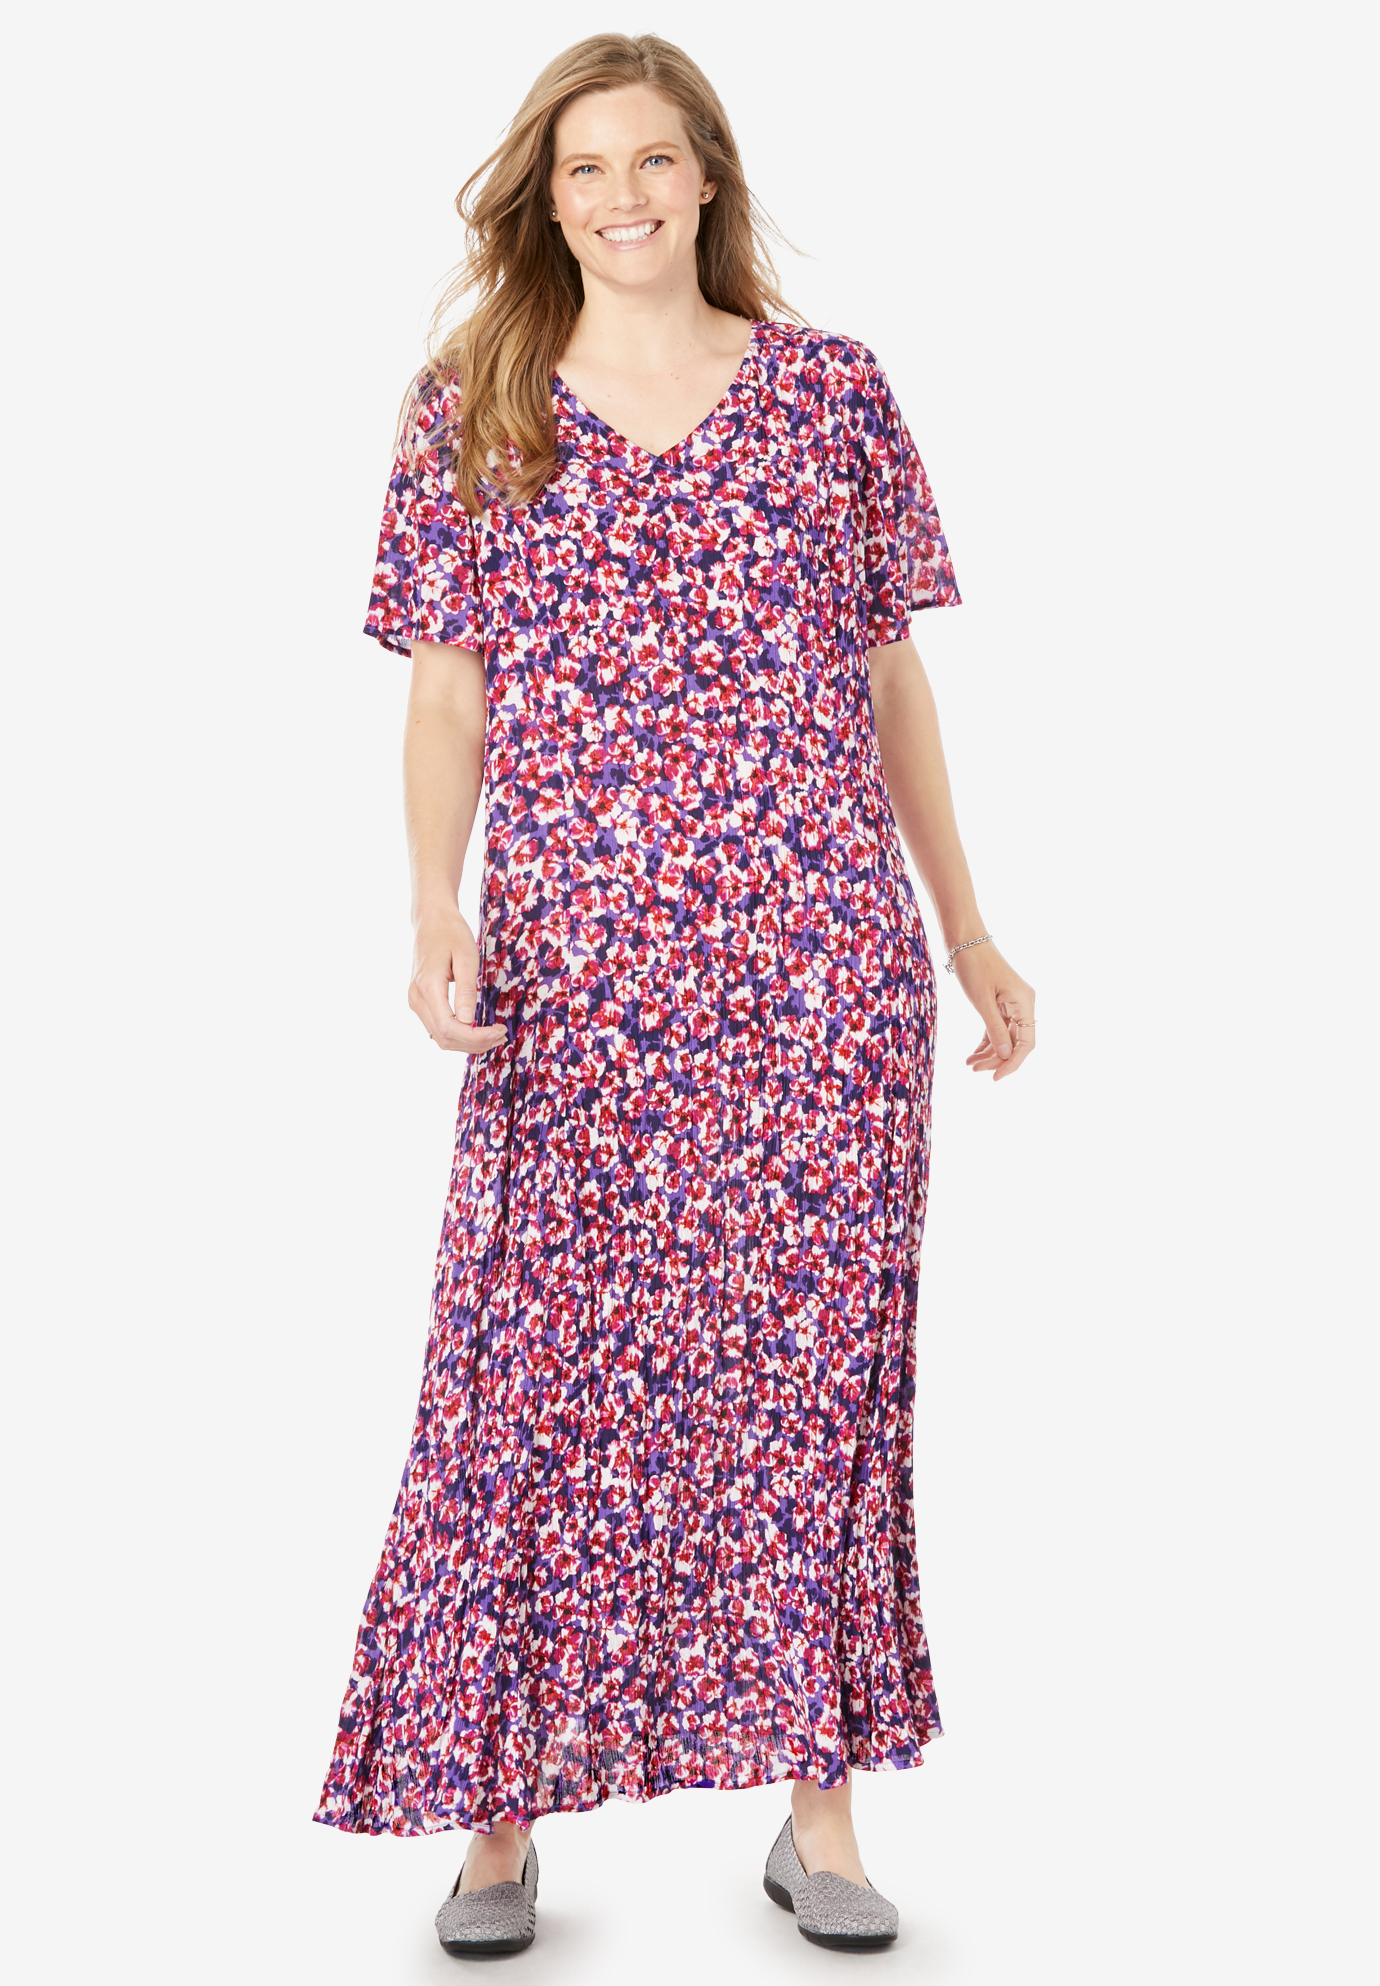 Buy > crinkle summer dresses > in stock